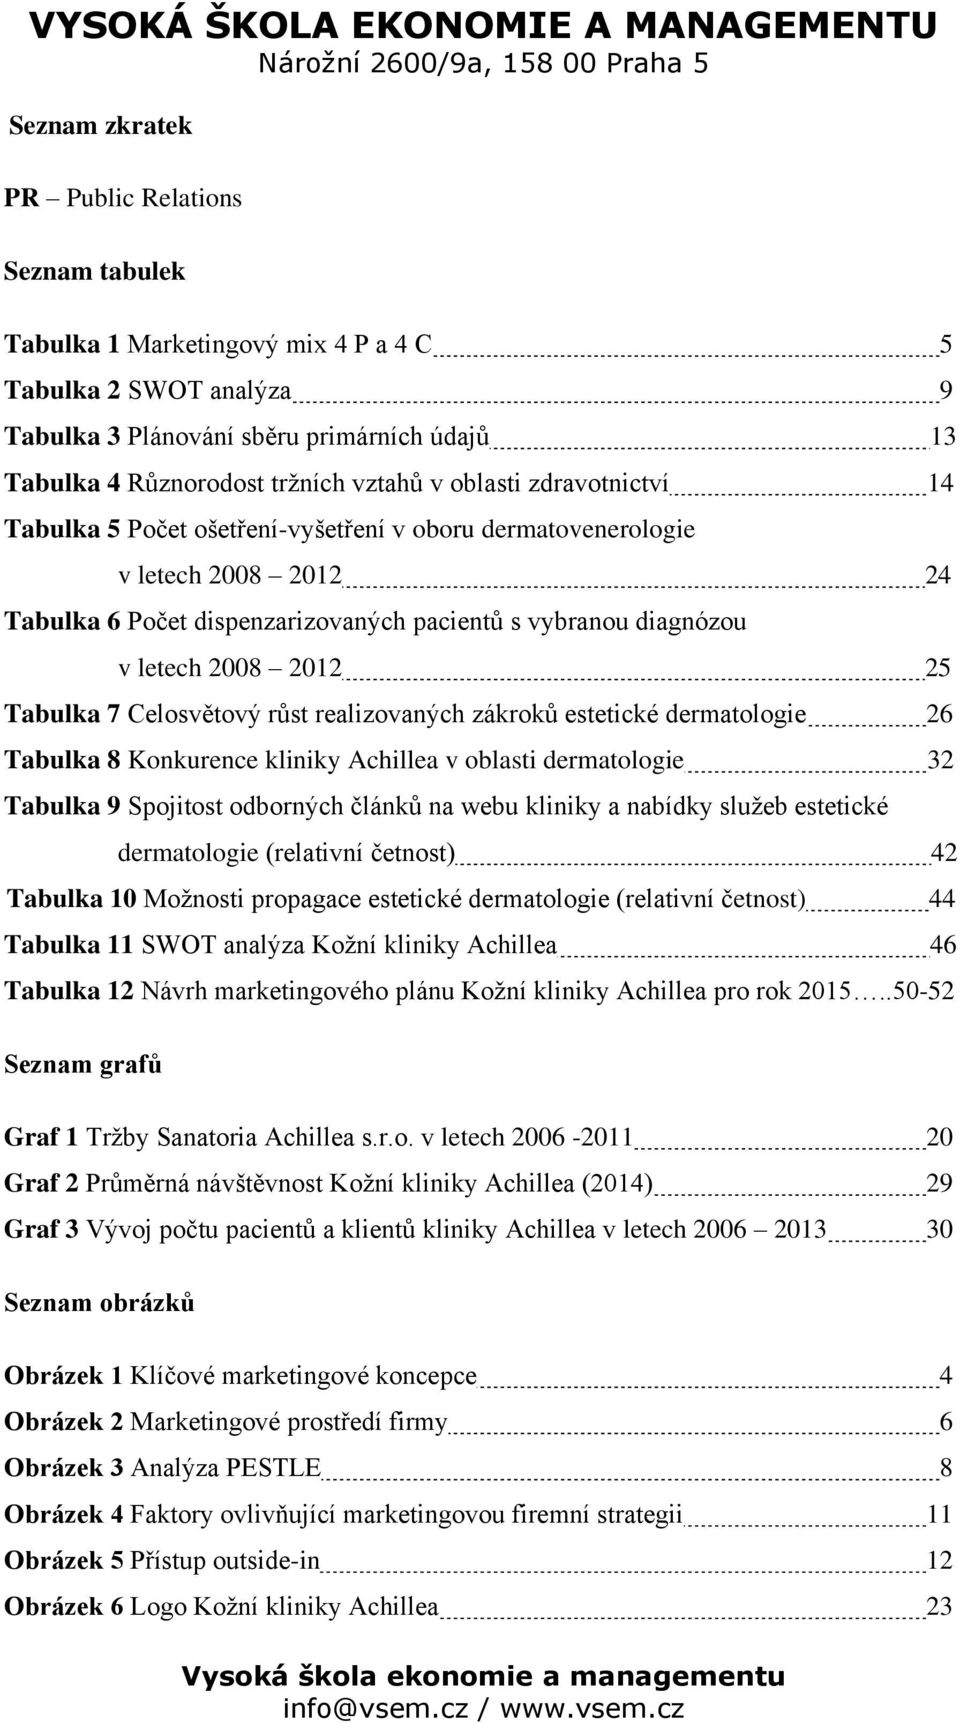 Tabulka 7 Celosvětový růst realizovaných zákroků estetické dermatologie 26 Tabulka 8 Konkurence kliniky Achillea v oblasti dermatologie 32 Tabulka 9 Spojitost odborných článků na webu kliniky a